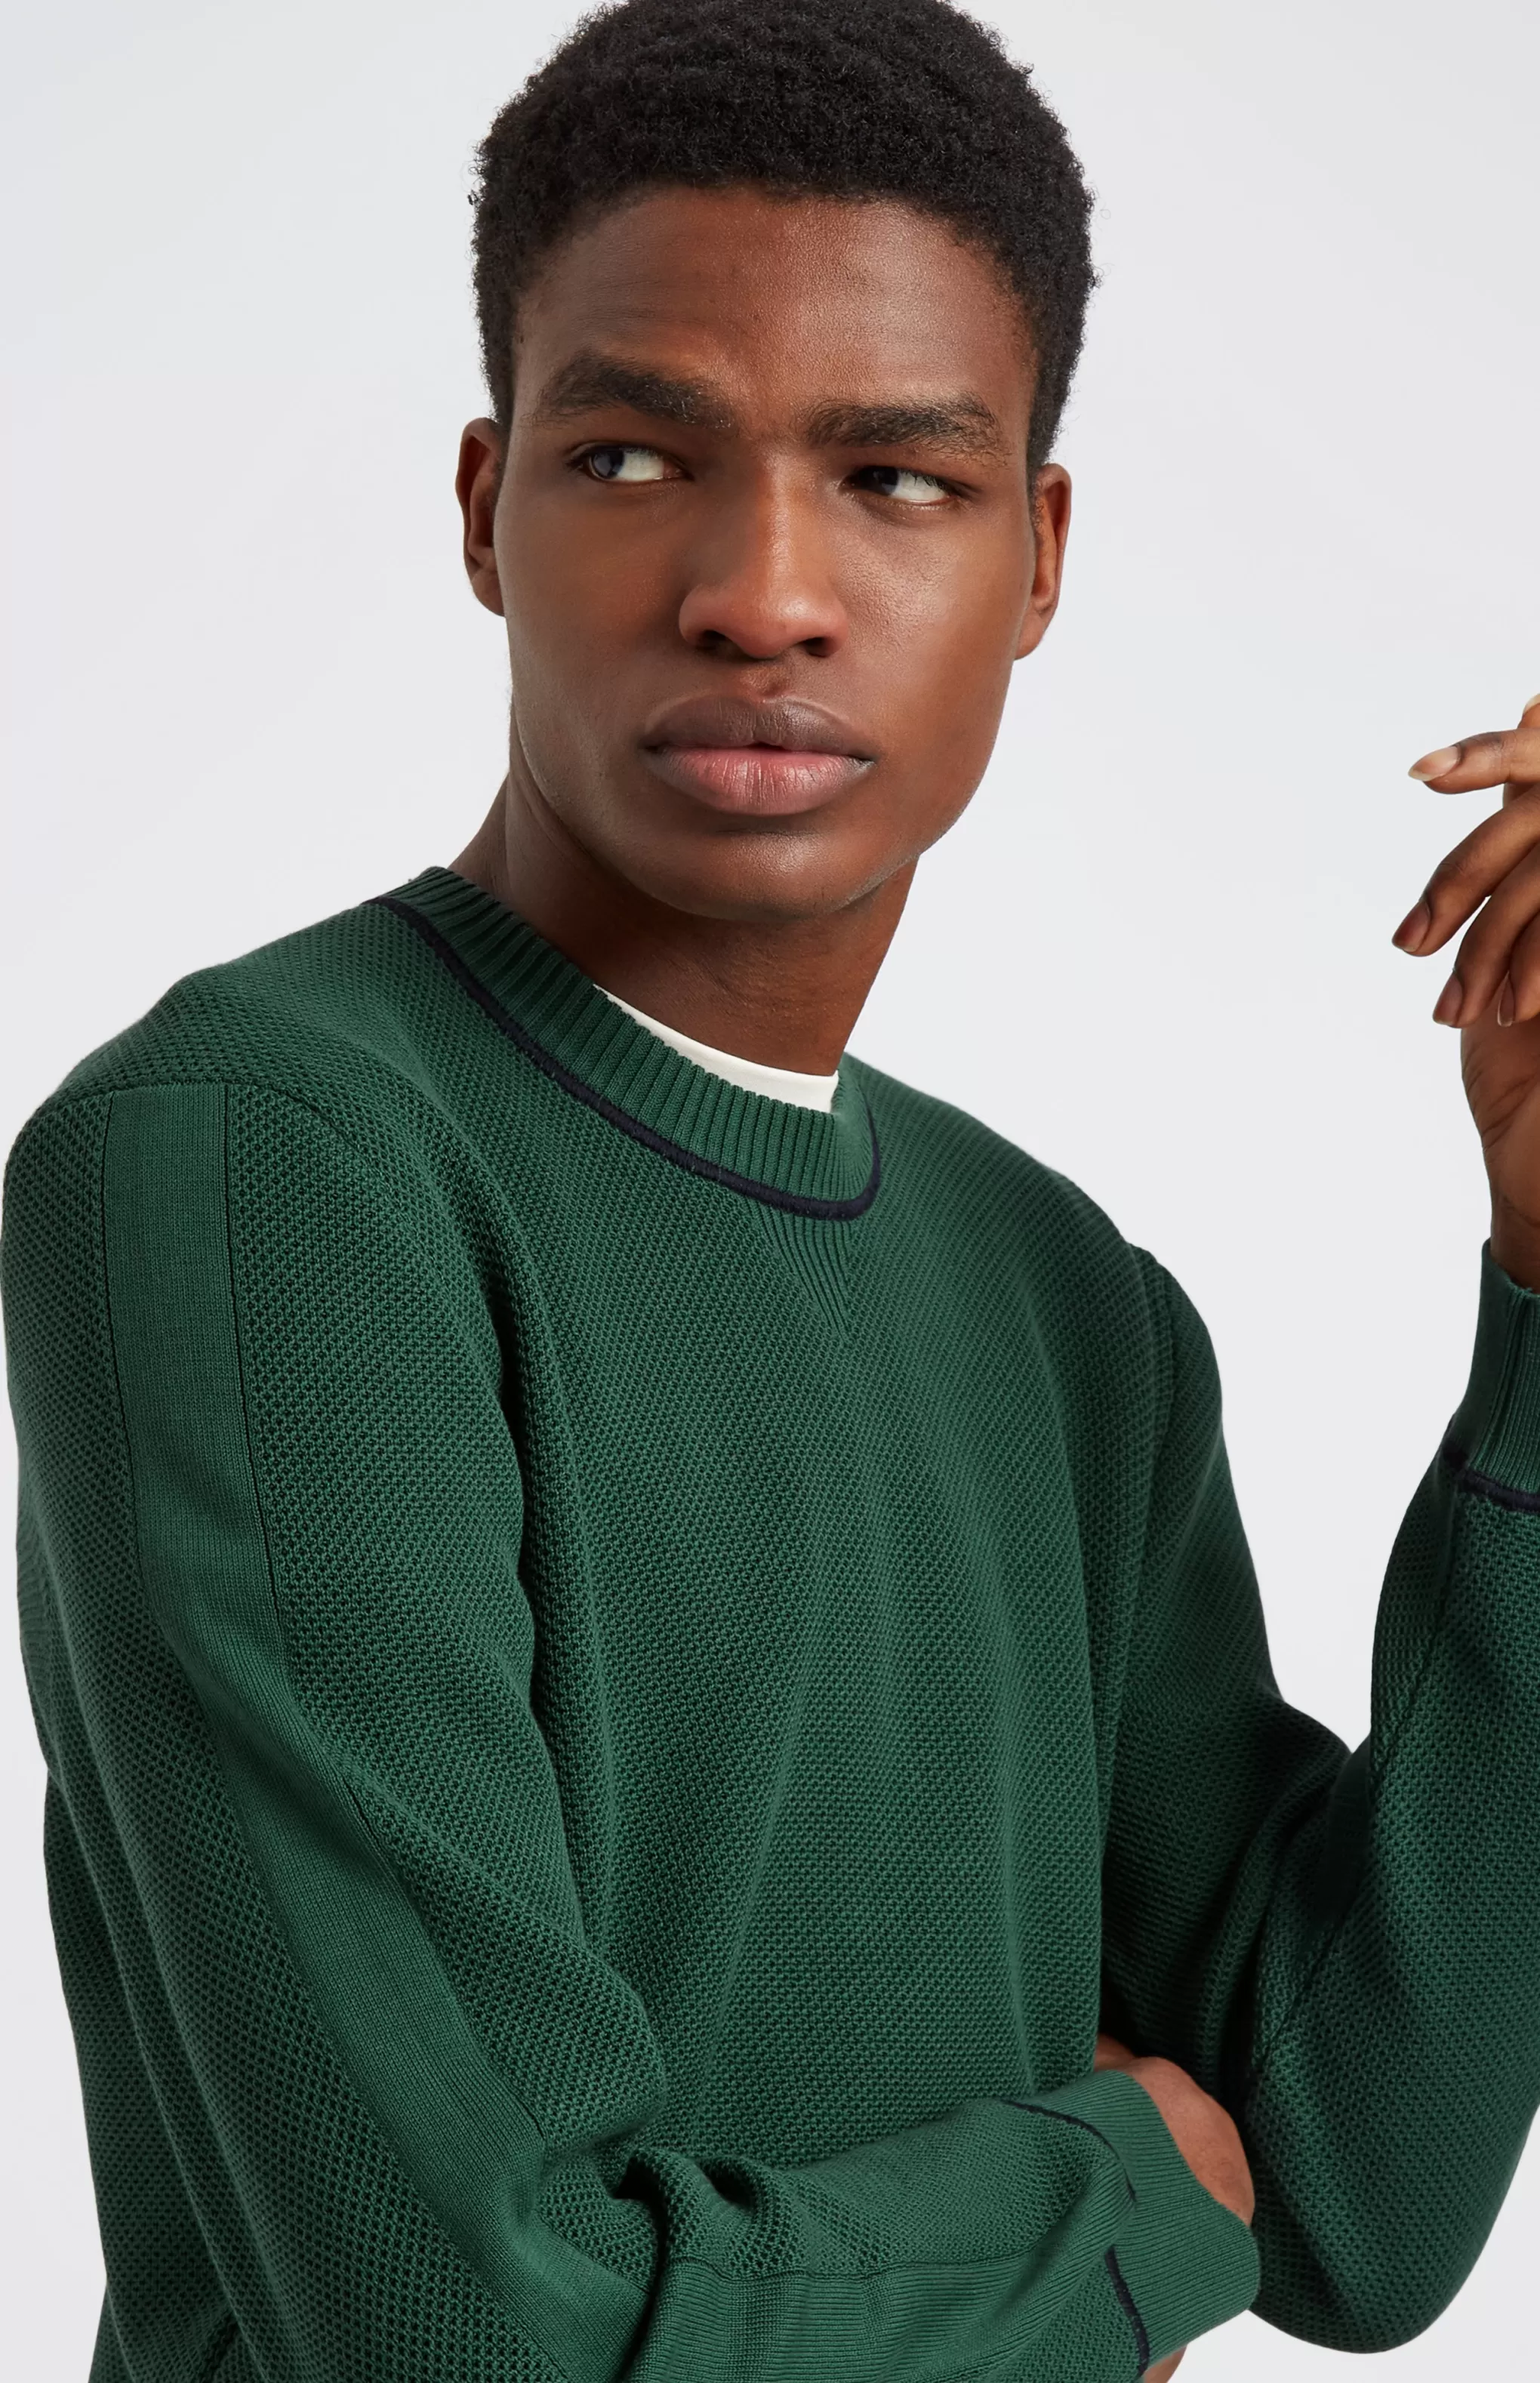 Best Sale Men's Round Neck Cotton Sweatshirt Jumper In Forest Green / Navy Men Loungewear